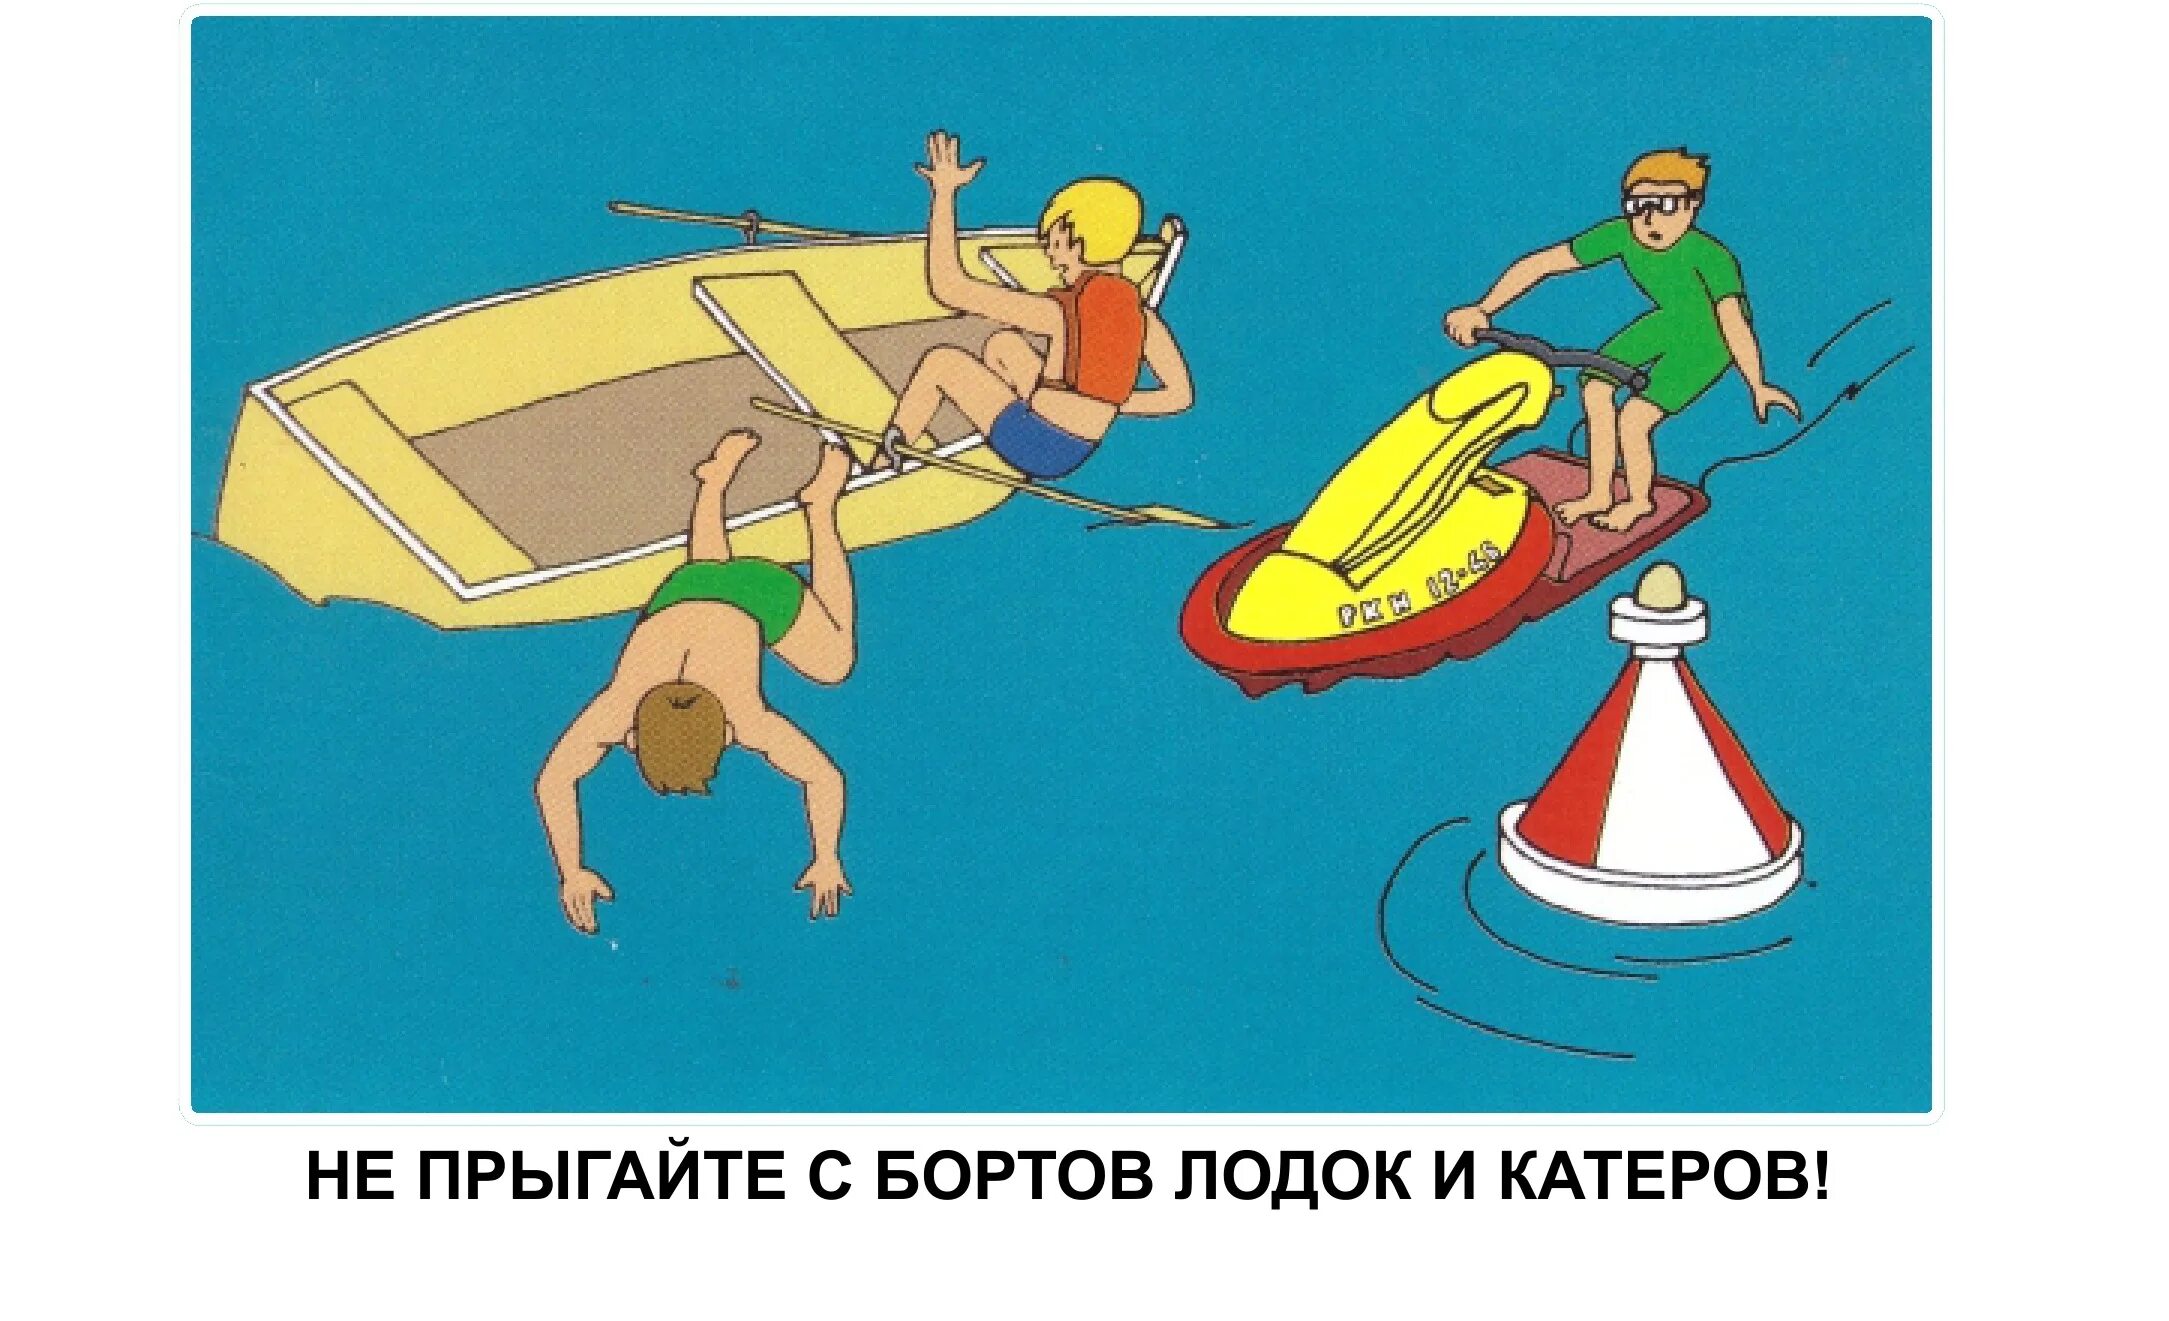 Безопасность на воде. Безопасность на воде в лодке. Нельзя прыгать с лодок. Правила поведения на лодке. Можно ли плавать на лодке в запрет